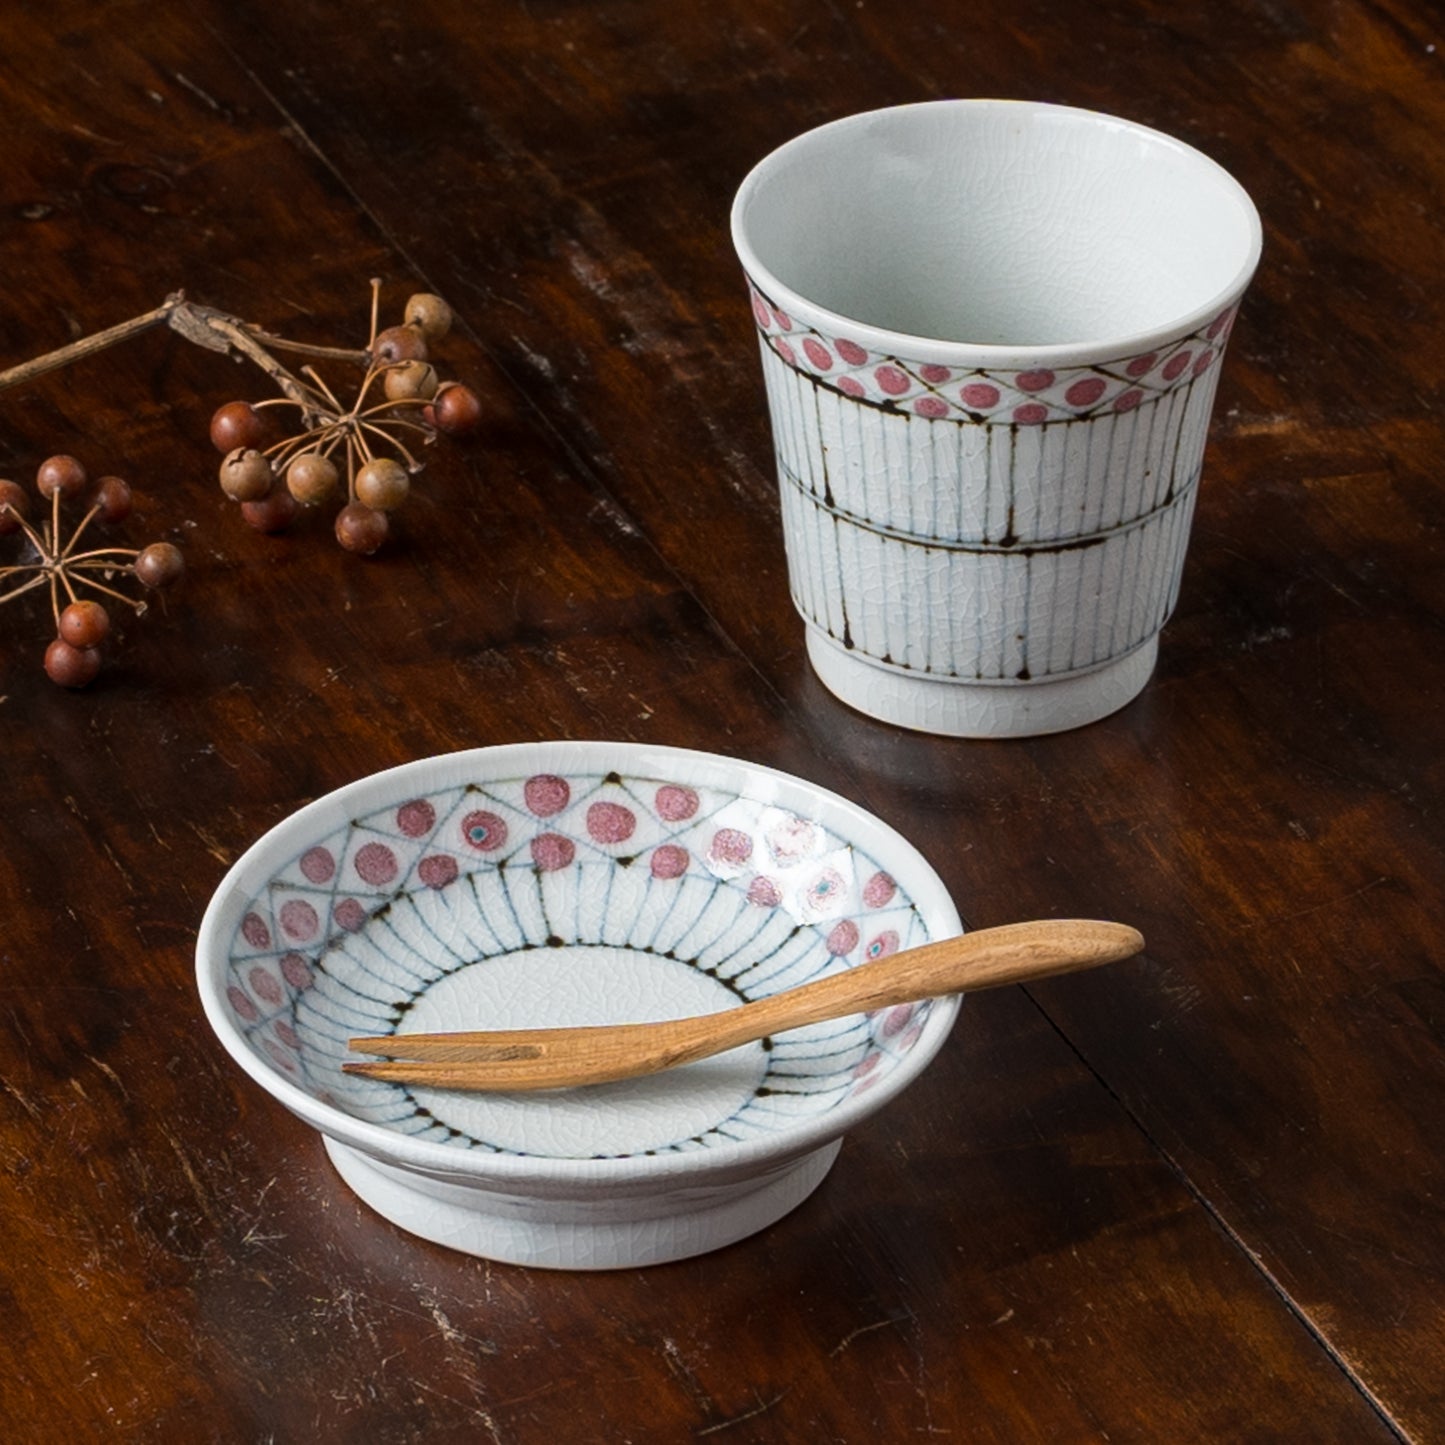 和菓子にぴったり合う砥部焼陶彩窯の花垣文湯吞みと3.5寸皿